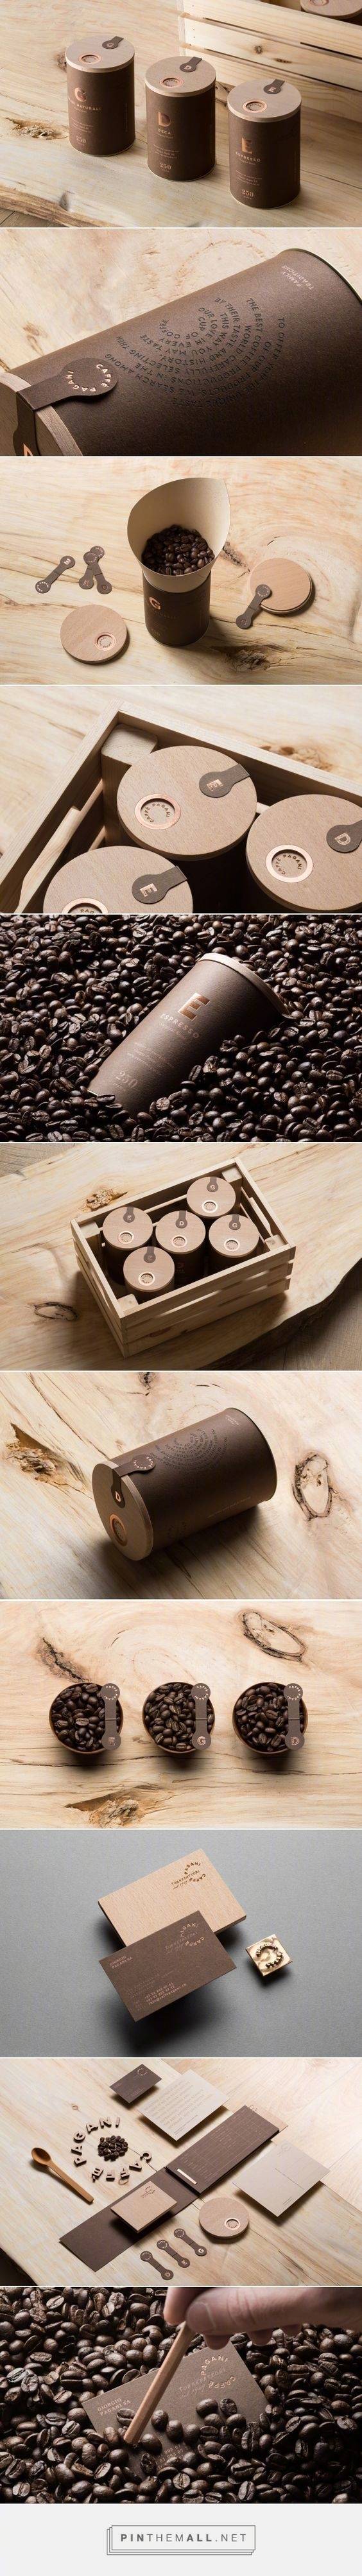 咖啡☕外包装设计